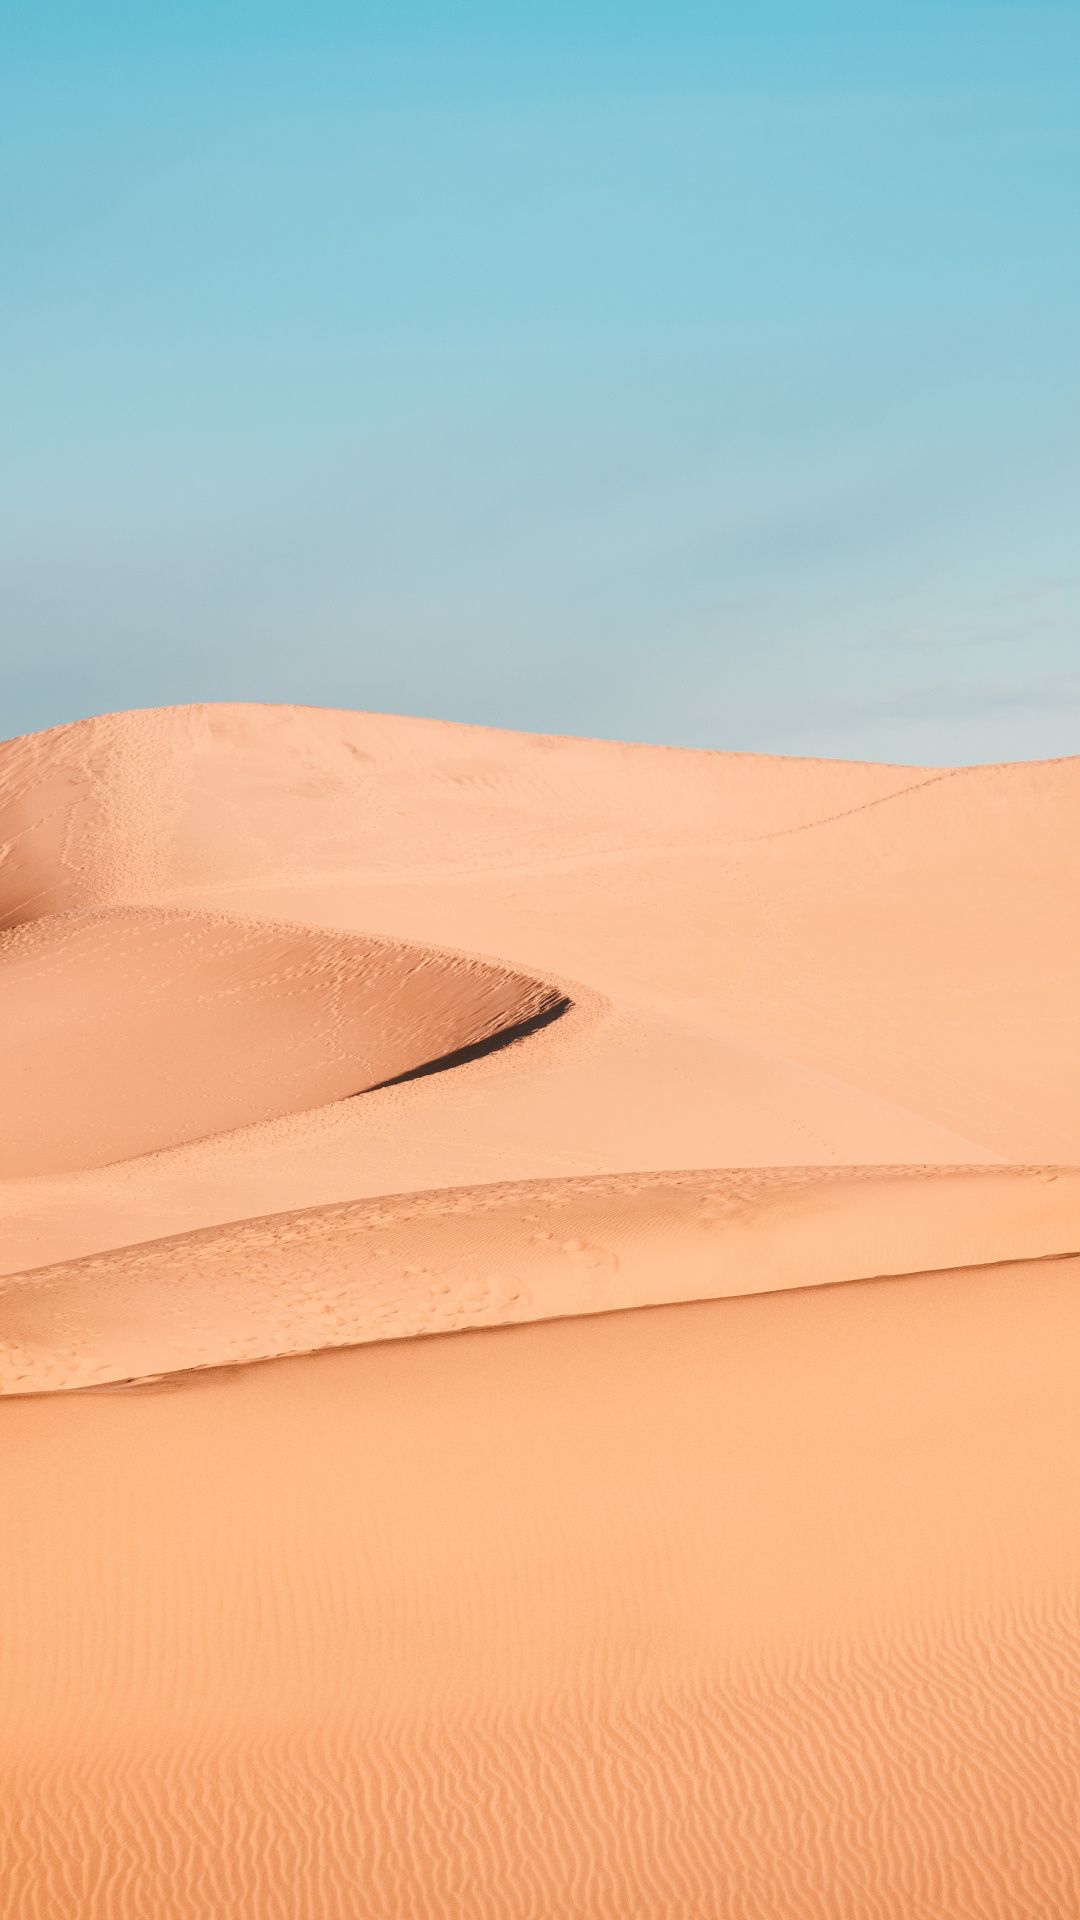 Sand, desert, dunes, landscape Wallpaper. Landscape wallpaper, iPhone wallpaper landscape, Desert aesthetic